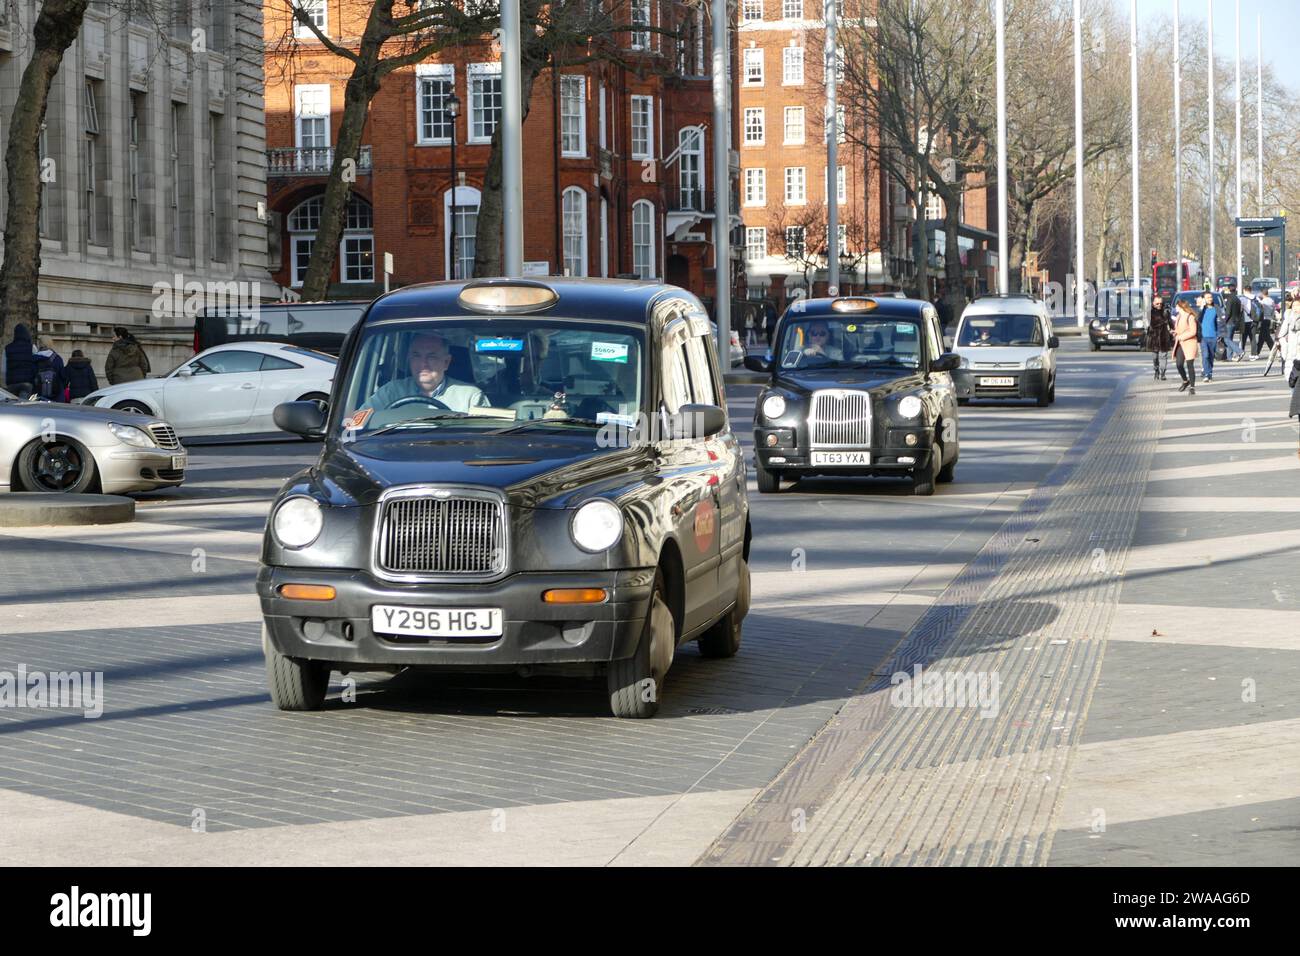 Londra, Inghilterra, Regno Unito - 13 febbraio 2017: Taxi nero, tradizionale e iconico taxi londinese in strada Foto Stock